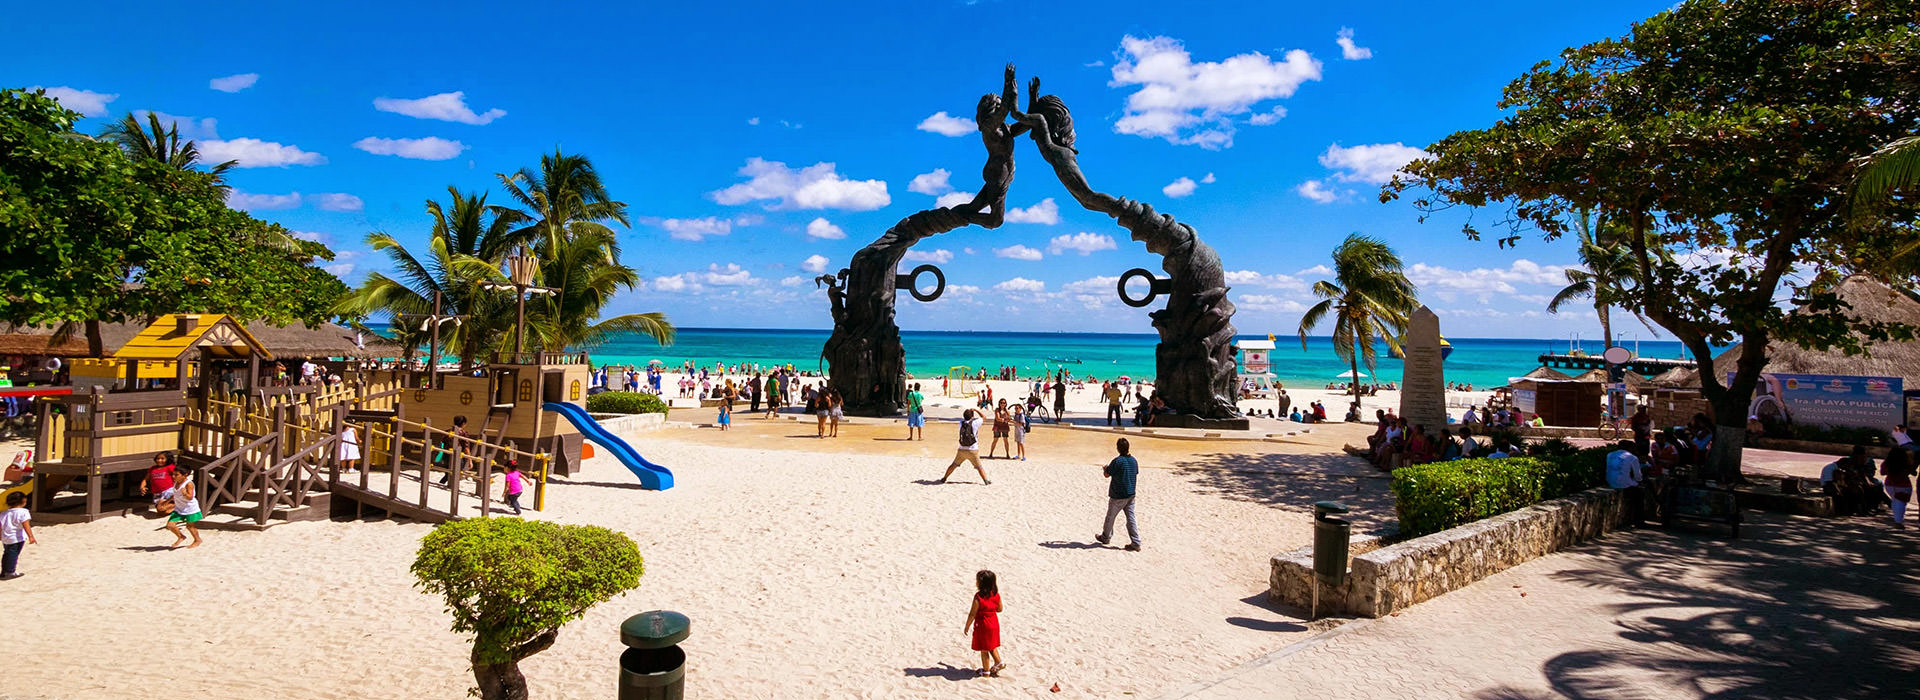 Playa del Carmen Resorts